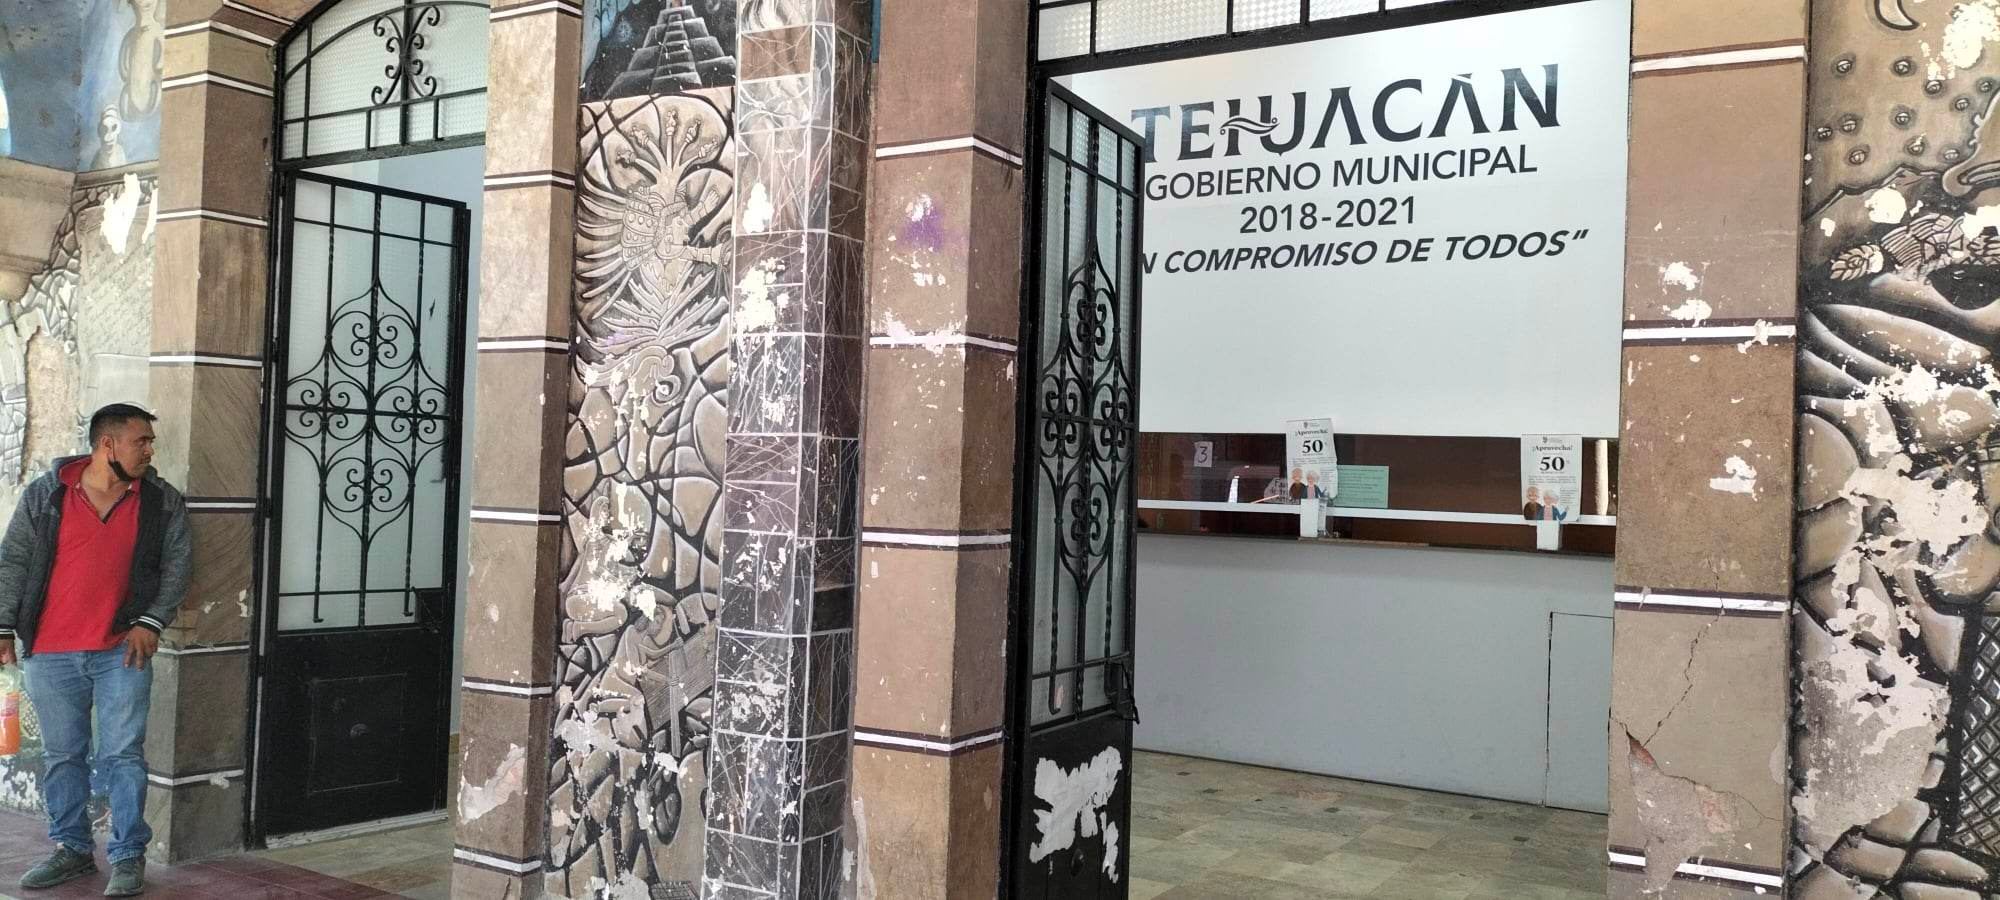 Más del 50% de contribuyentes en Tehuacán adeudan el impuesto predial 